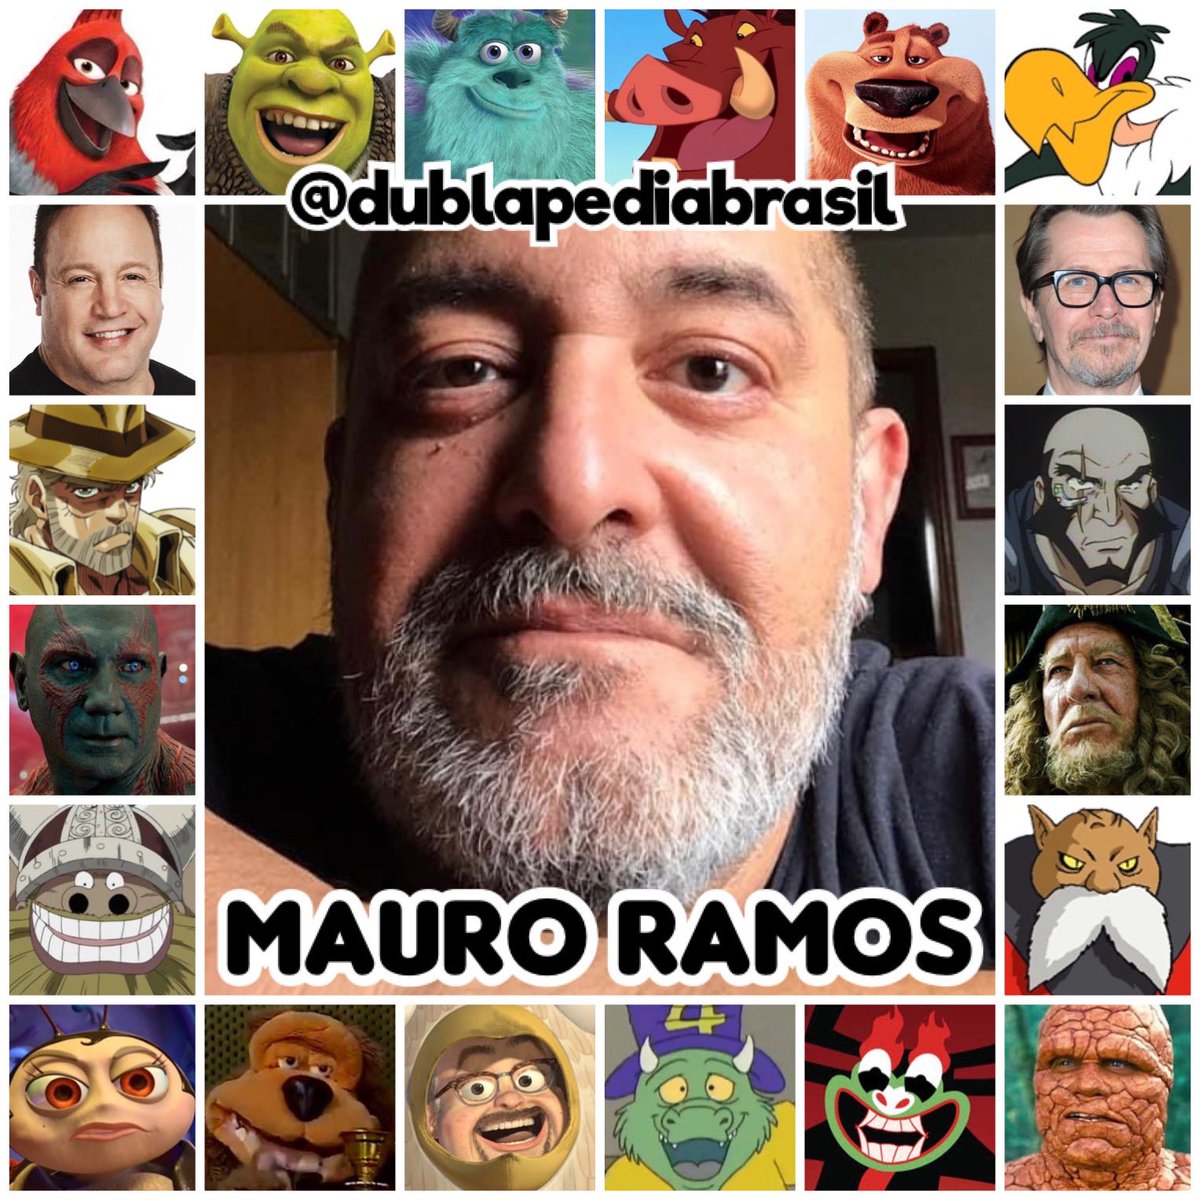 Mauro Ramos, Dublapédia